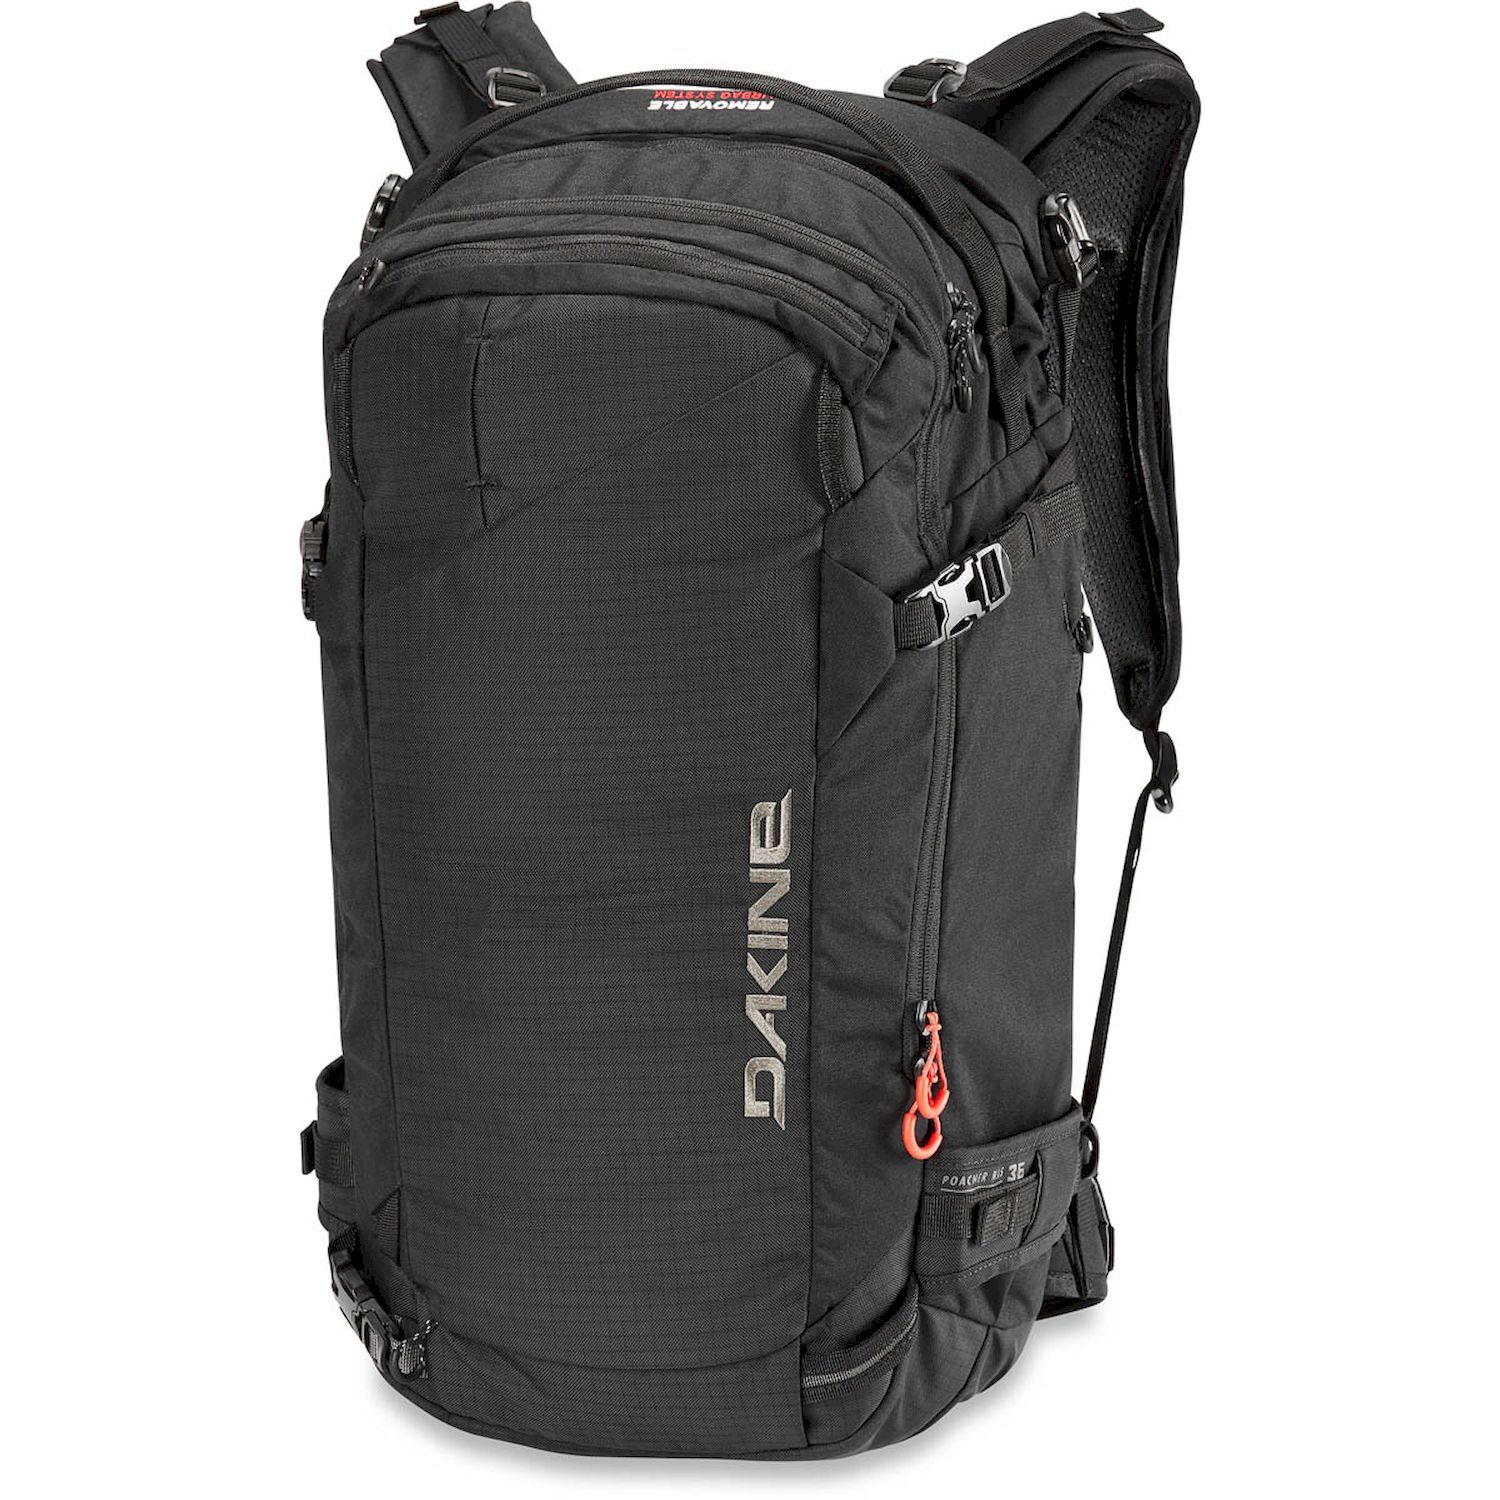 Dakine Poacher Ras 36L - Ski backpack - Men's